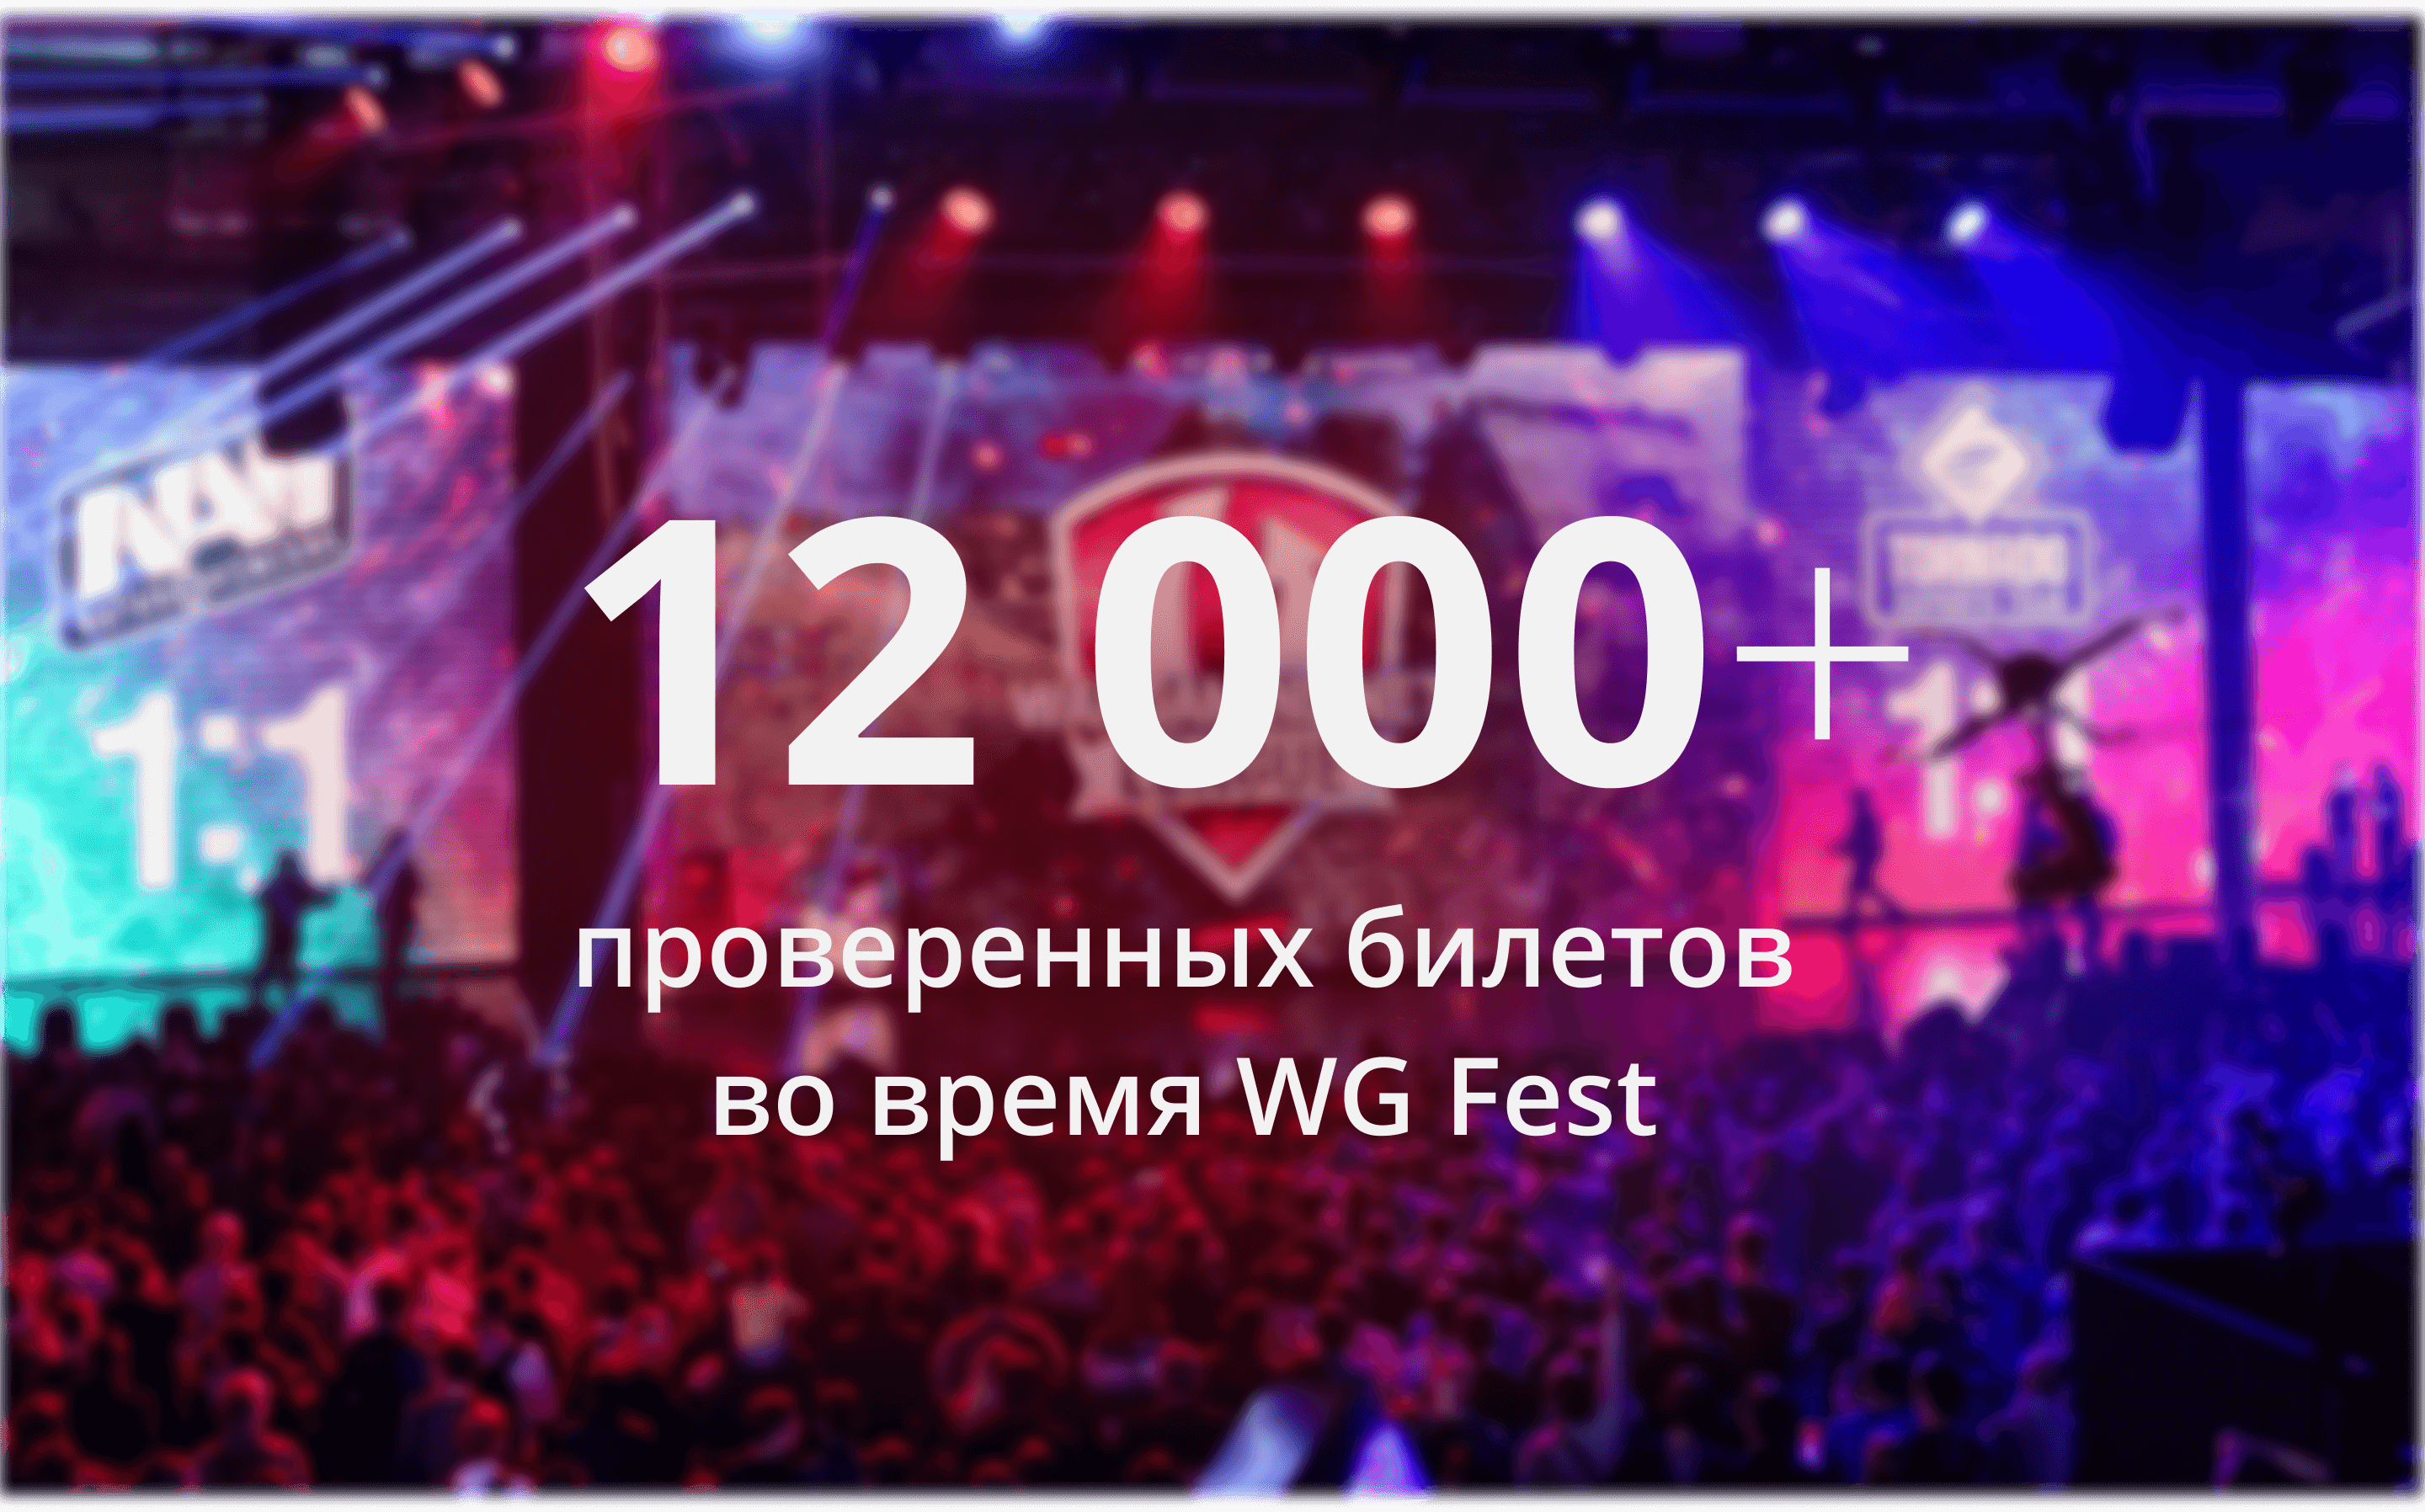 Более 12 000 проверенных билетов во время WG Fest